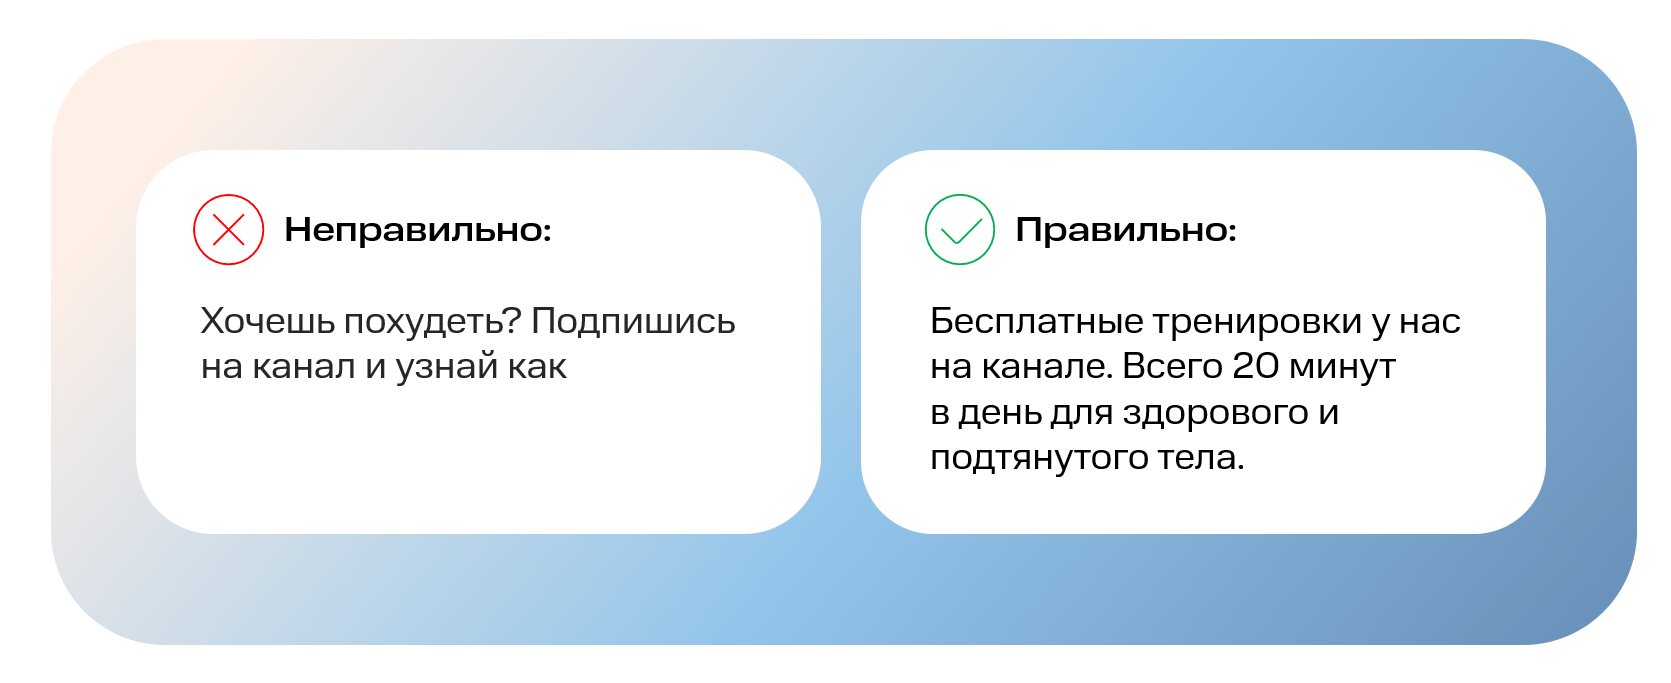 Рекомендации по модерации рекламы в Telegram